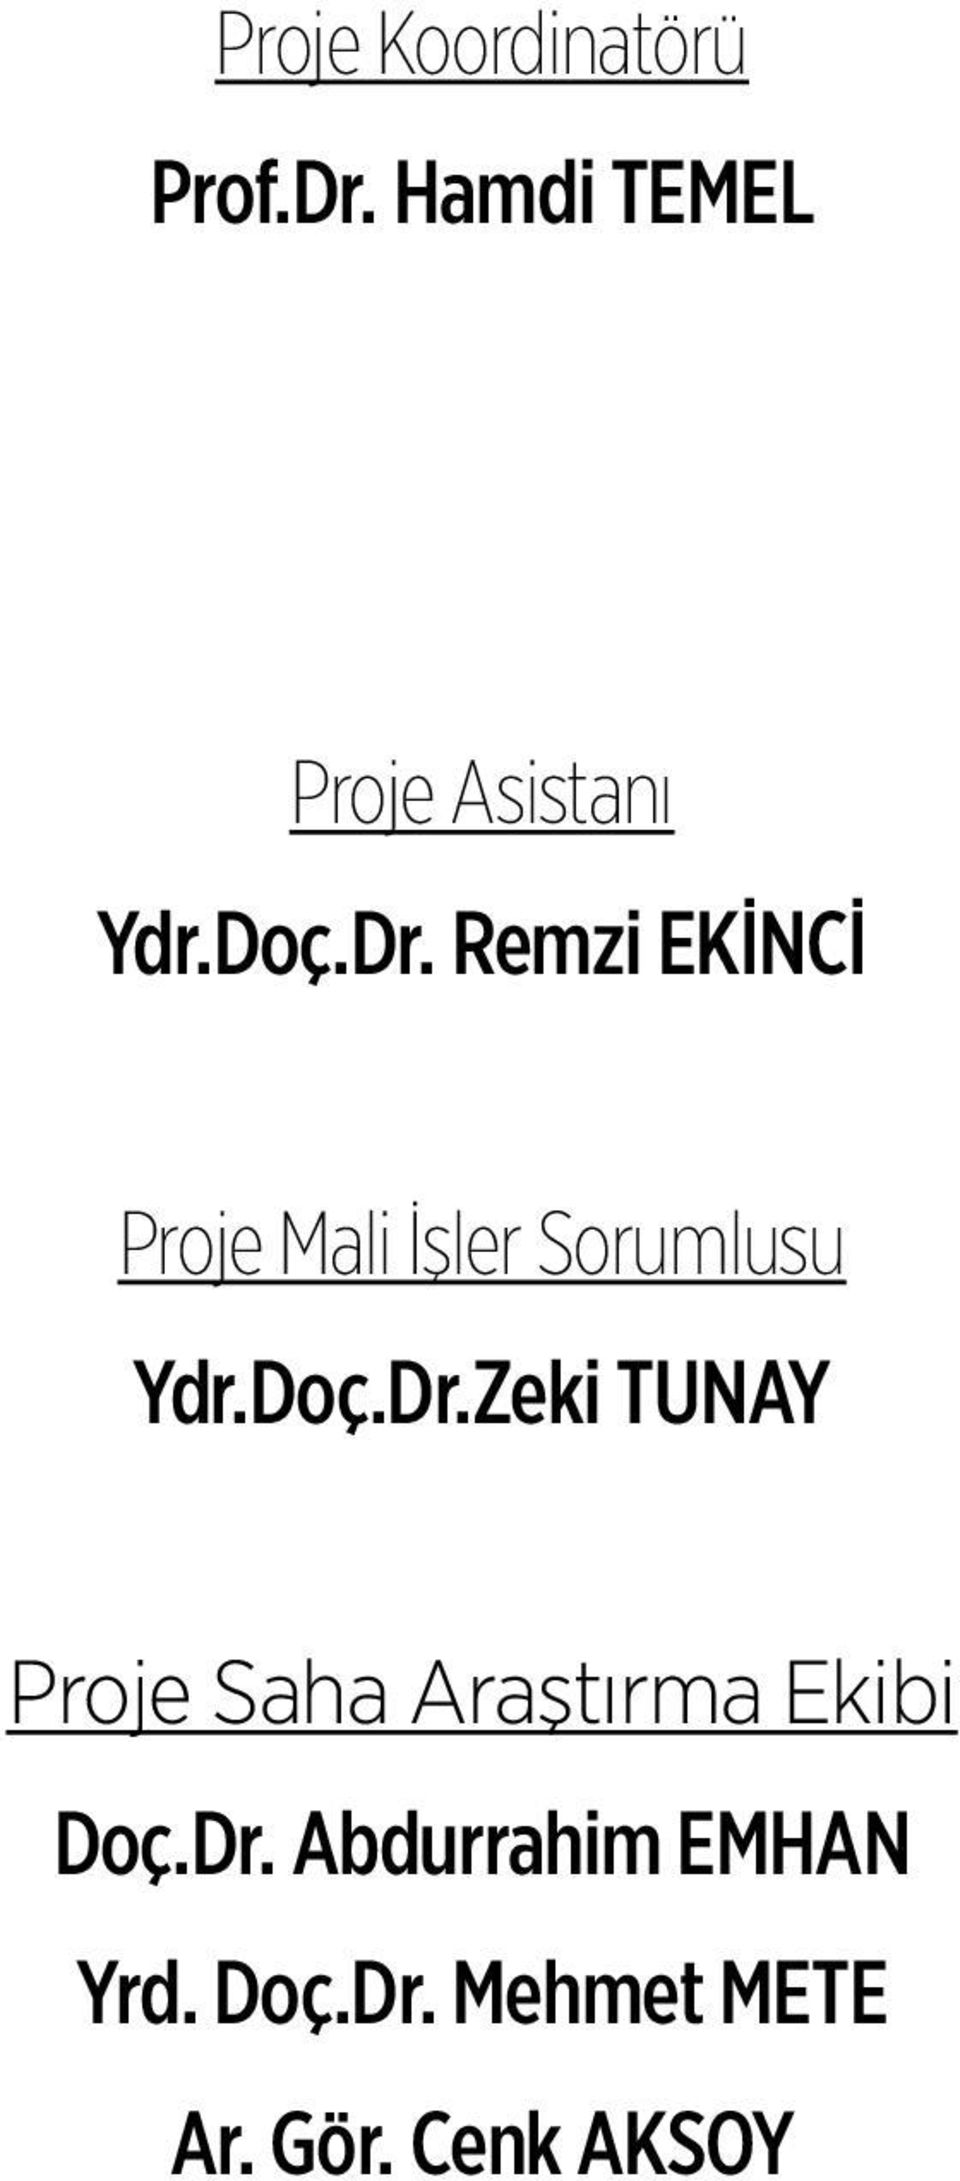 Remzi EKİNCİ Proje Mali İşler Sorumlusu Ydr.Doç.Dr.